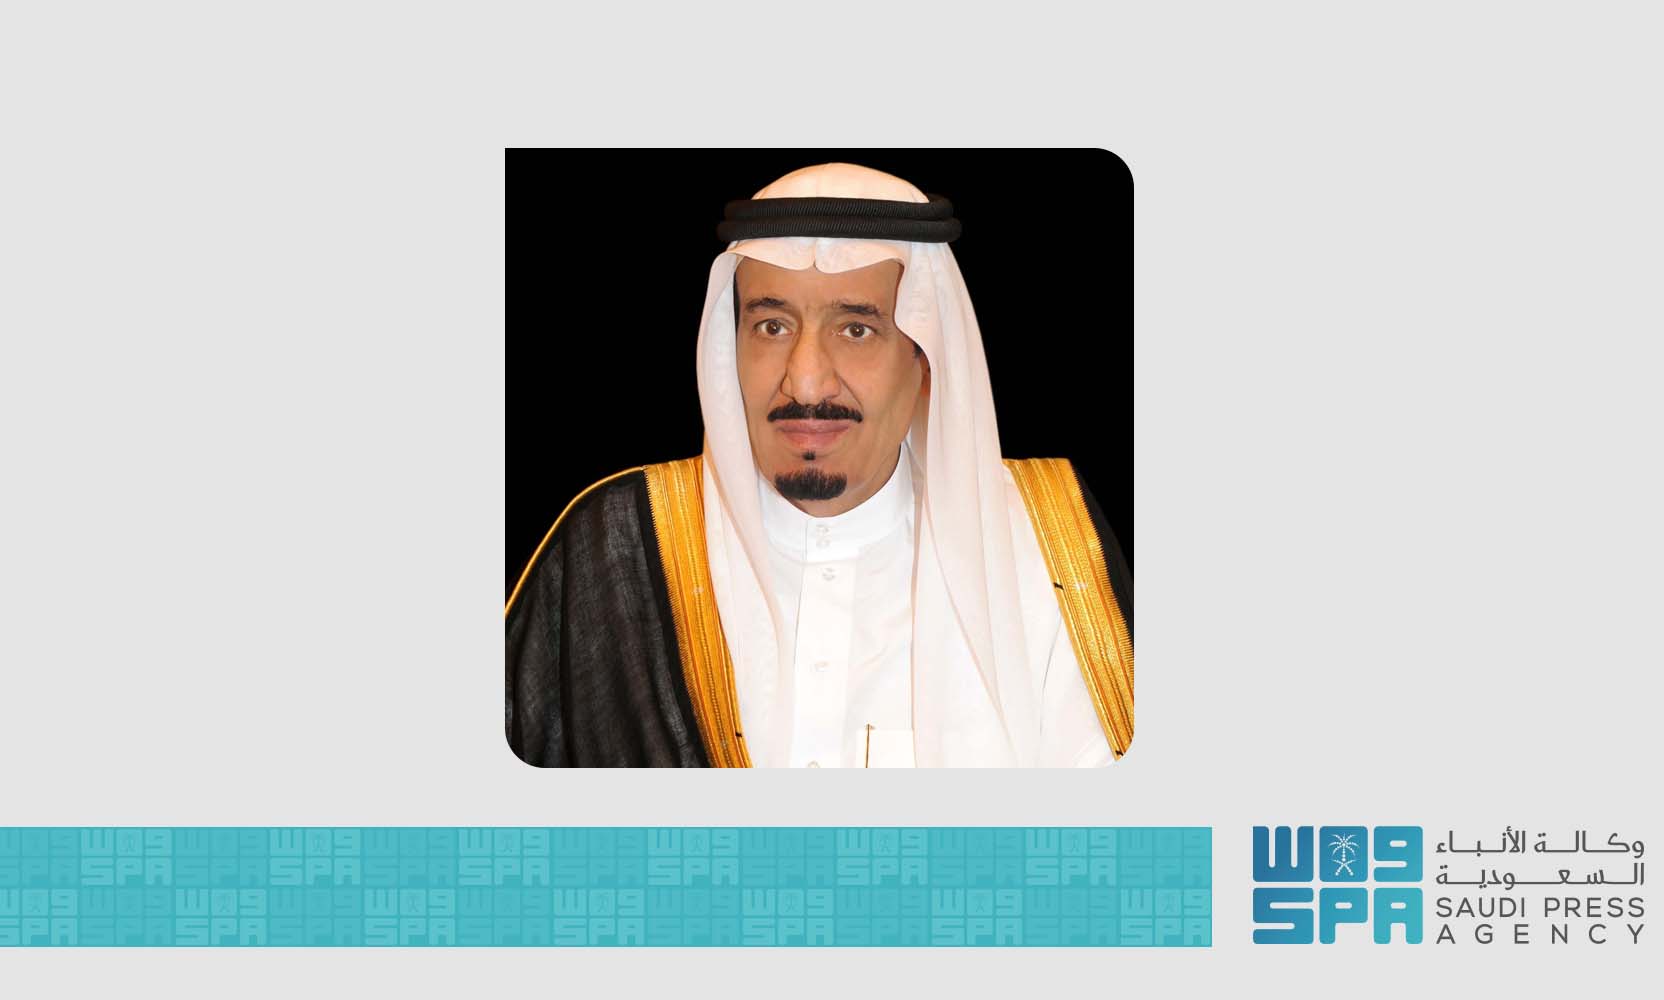 صدور الموافقة السامية على تعيين "محمد آل صايل" رئيسًا لهيئة المساحة والمعلومات الجيومكانية